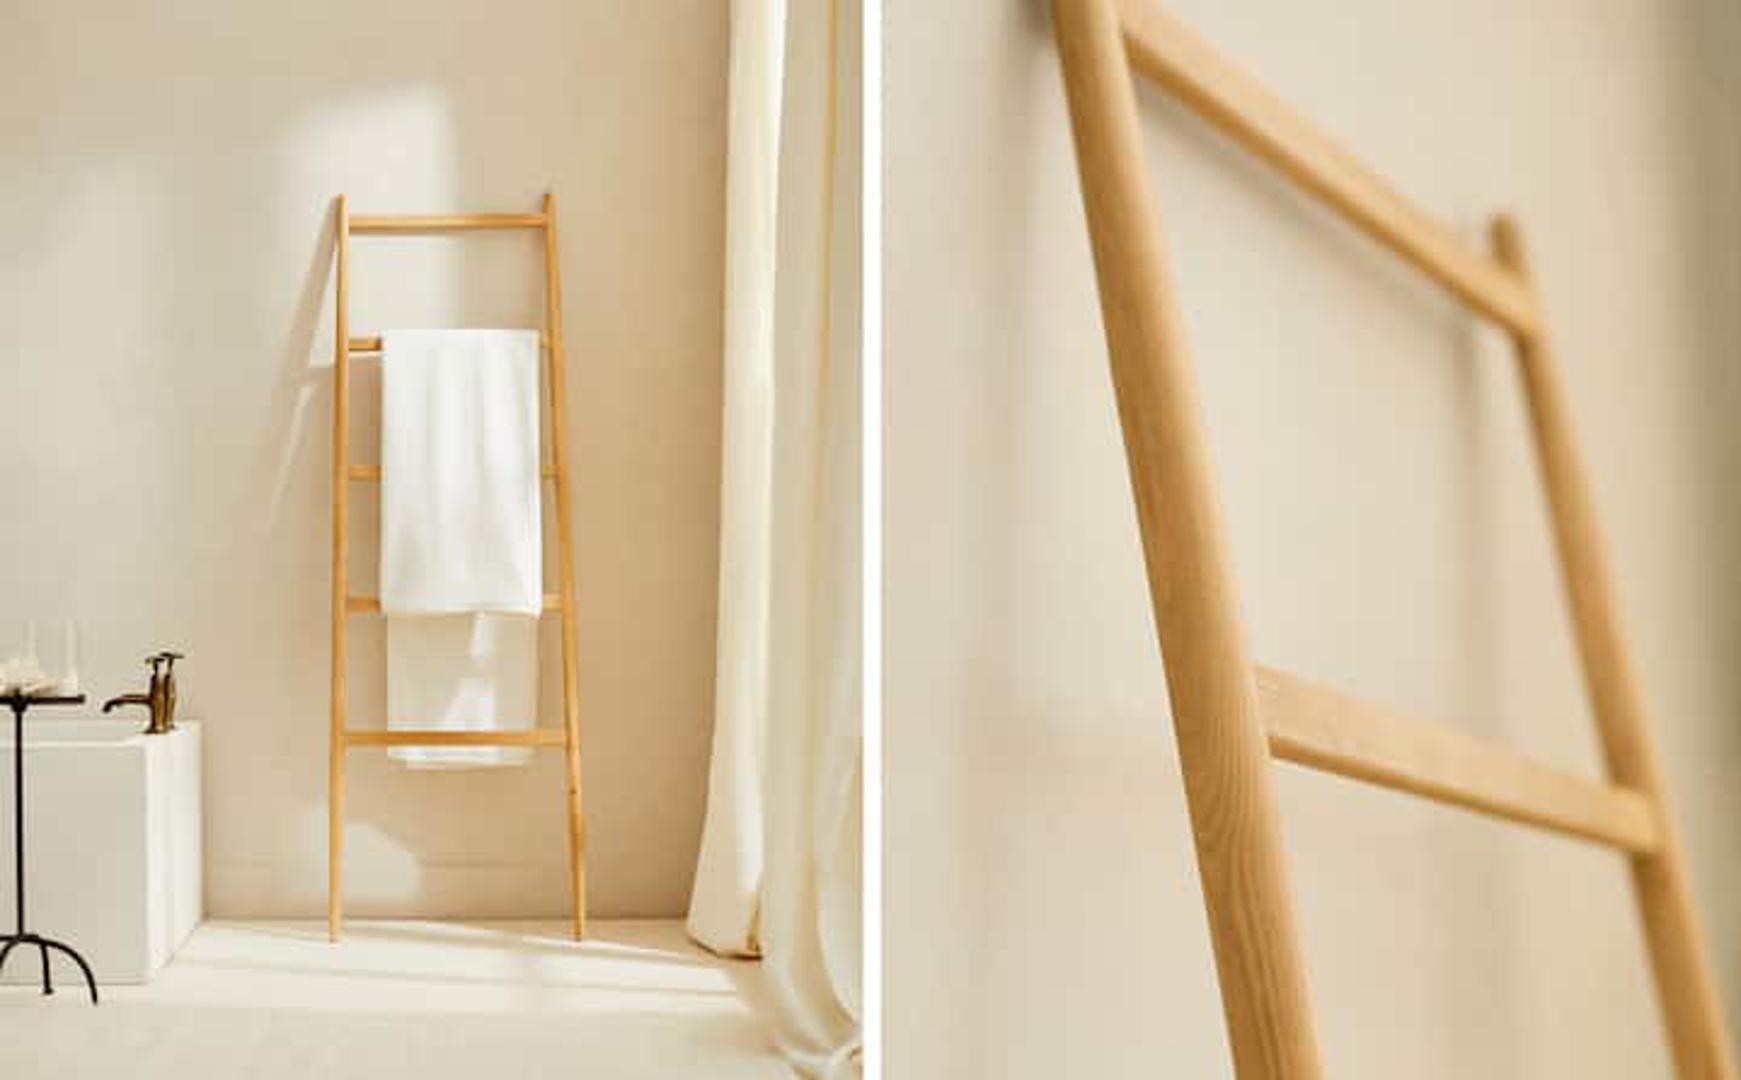 Drvene ljestve od jasena jako su efektan i praktičan detalj u kupaonici, a ne zauzimaju puno mjesta